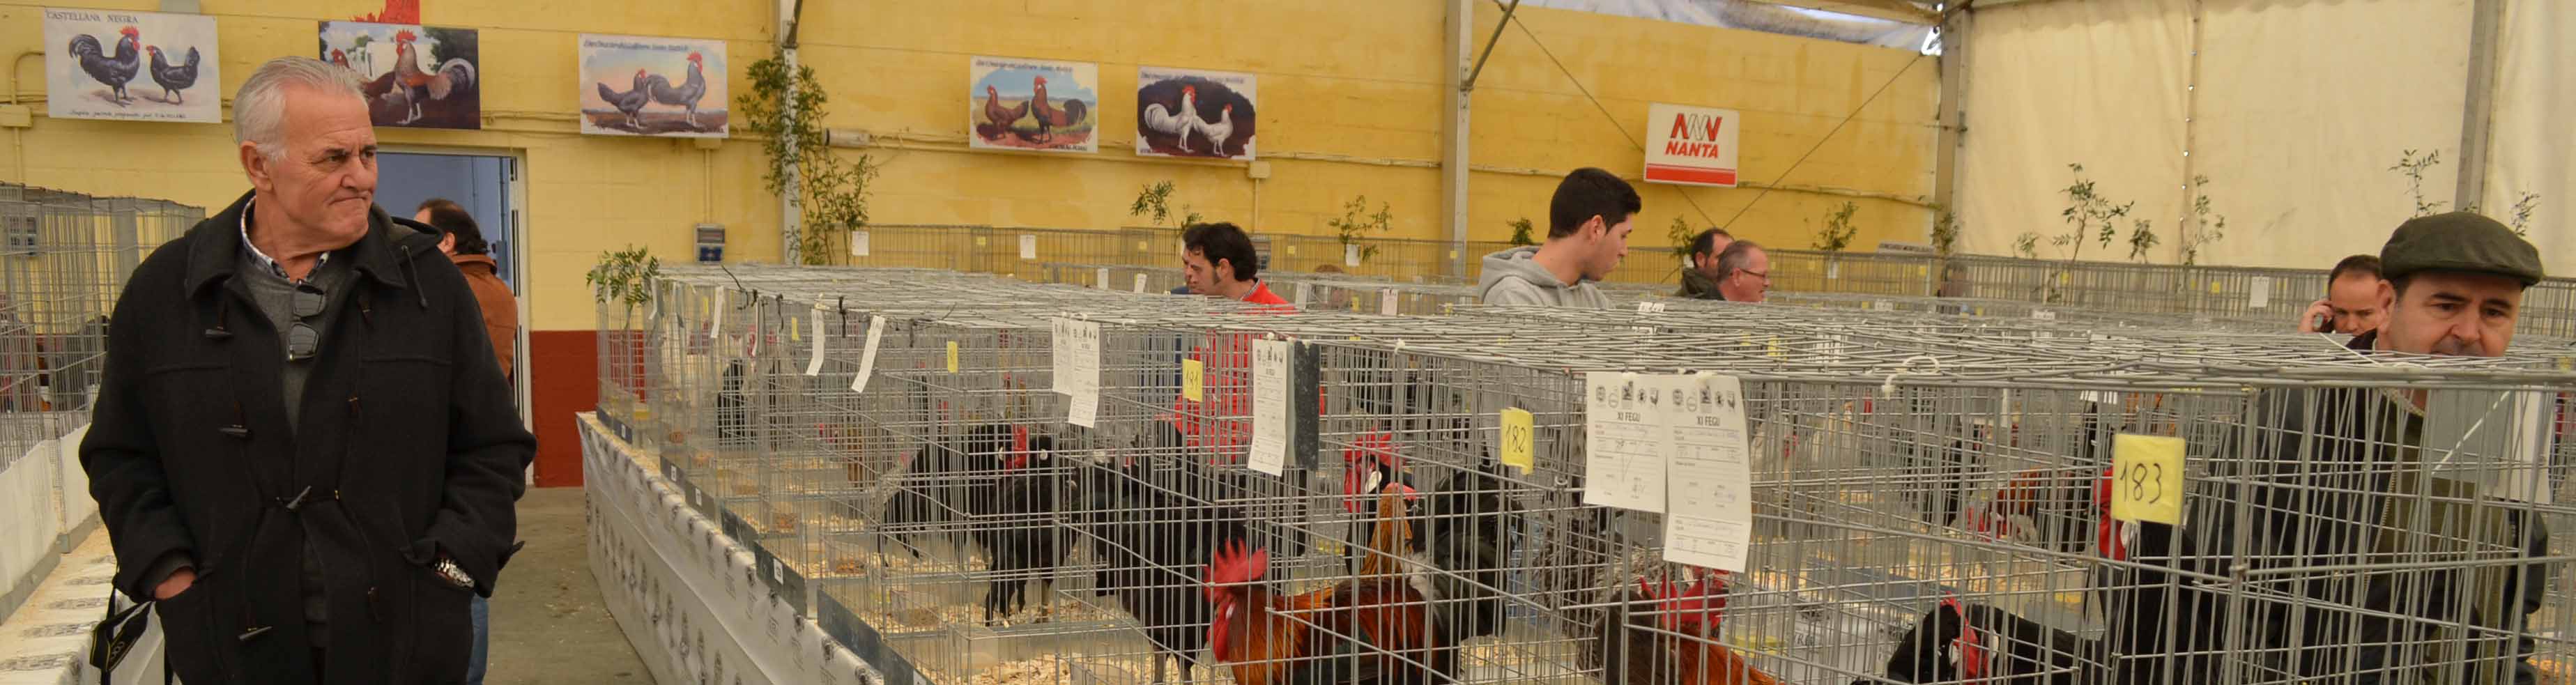 La feria de la Gallina Utrerana es uno de los eventos avícolas más importantes de España